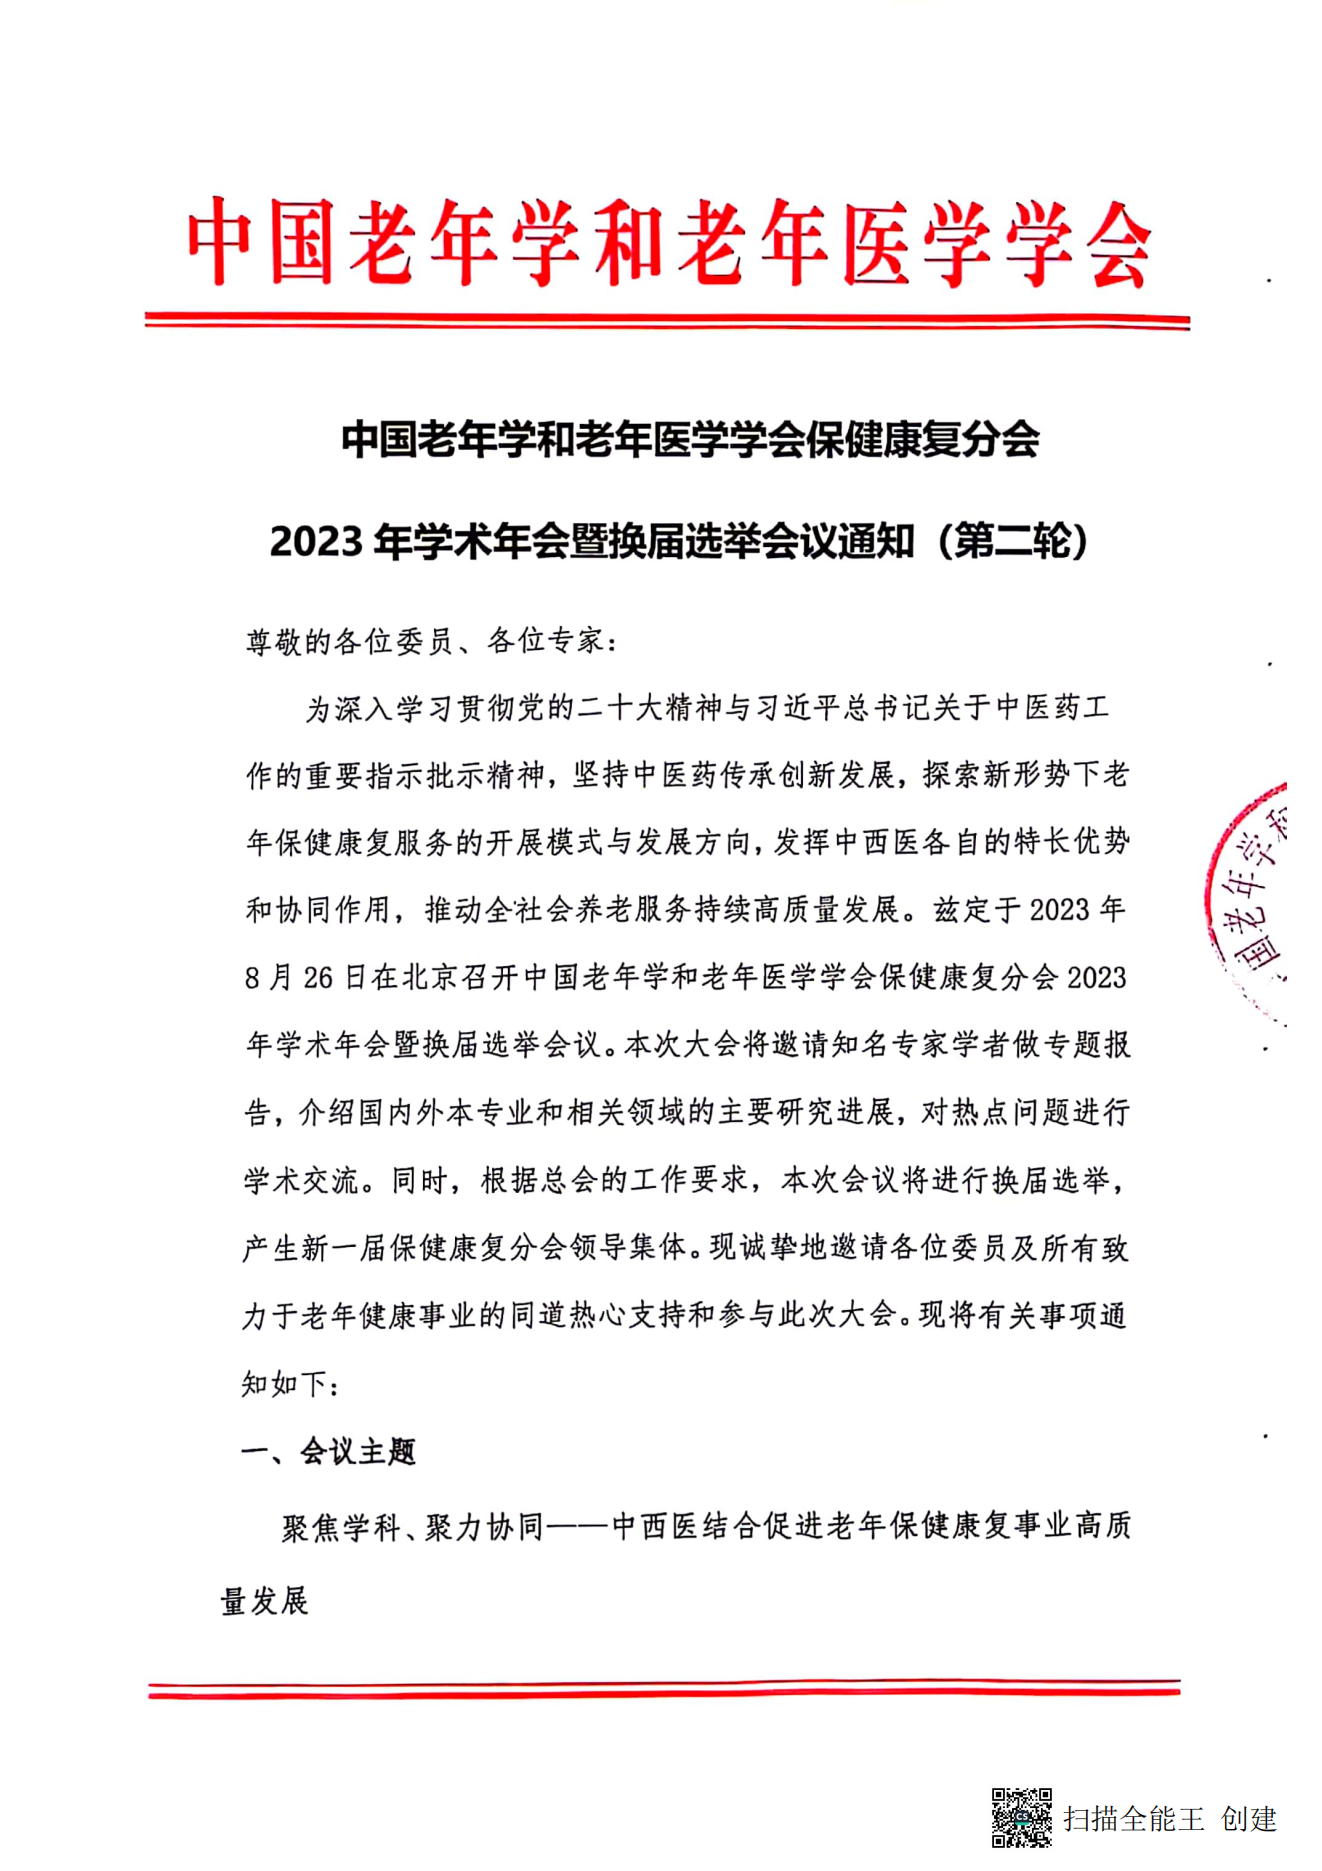 中国老年学和老年医学学会保健康复分会2023年学术年会暨换届选举会议通知（第二轮）_00.png